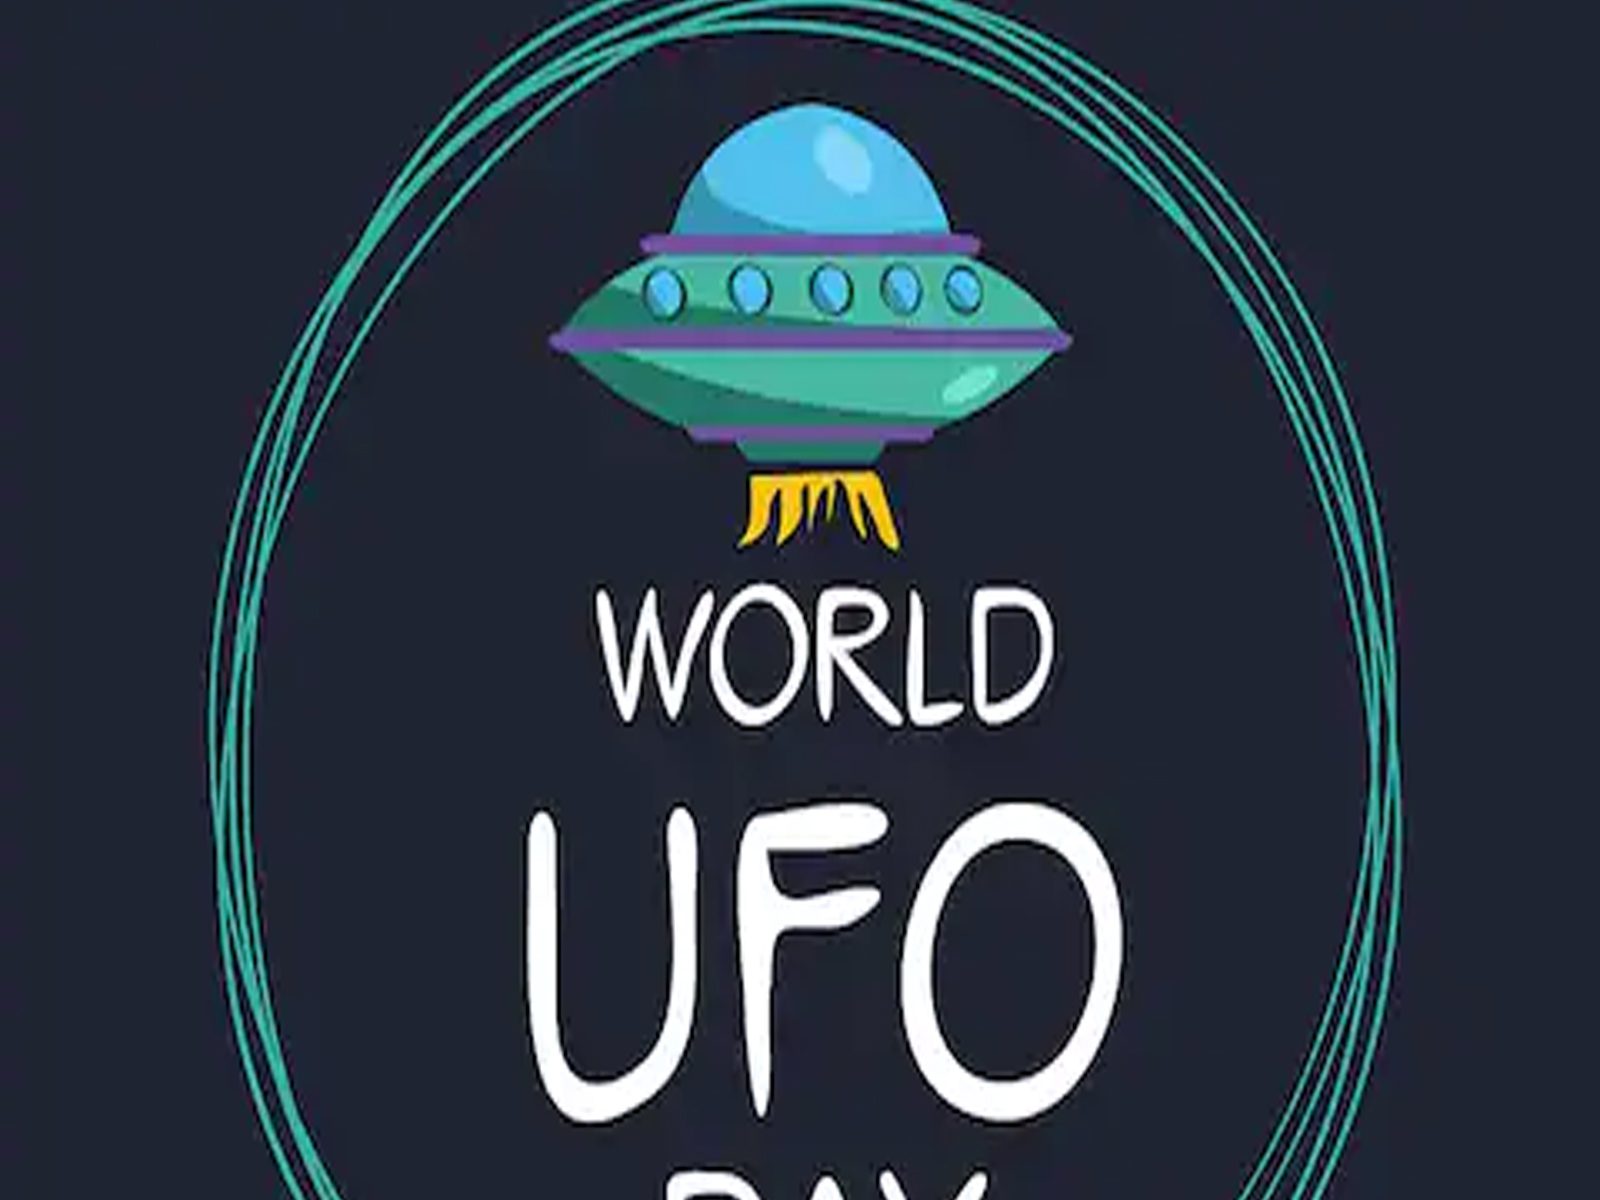 World UFO Day: ਕੀ ਦੂਜੀ ਦੁਨੀਆ 'ਚ ਮੌਜੂਦ ਹਨ ਏਲੀਅਨ? ਅਮਰੀਕੀ ਸਰਕਾਰ ਇਸ ਨੂੰ ਲੈ ਕੇ ਹੋਈ ਗੰਭੀਰ